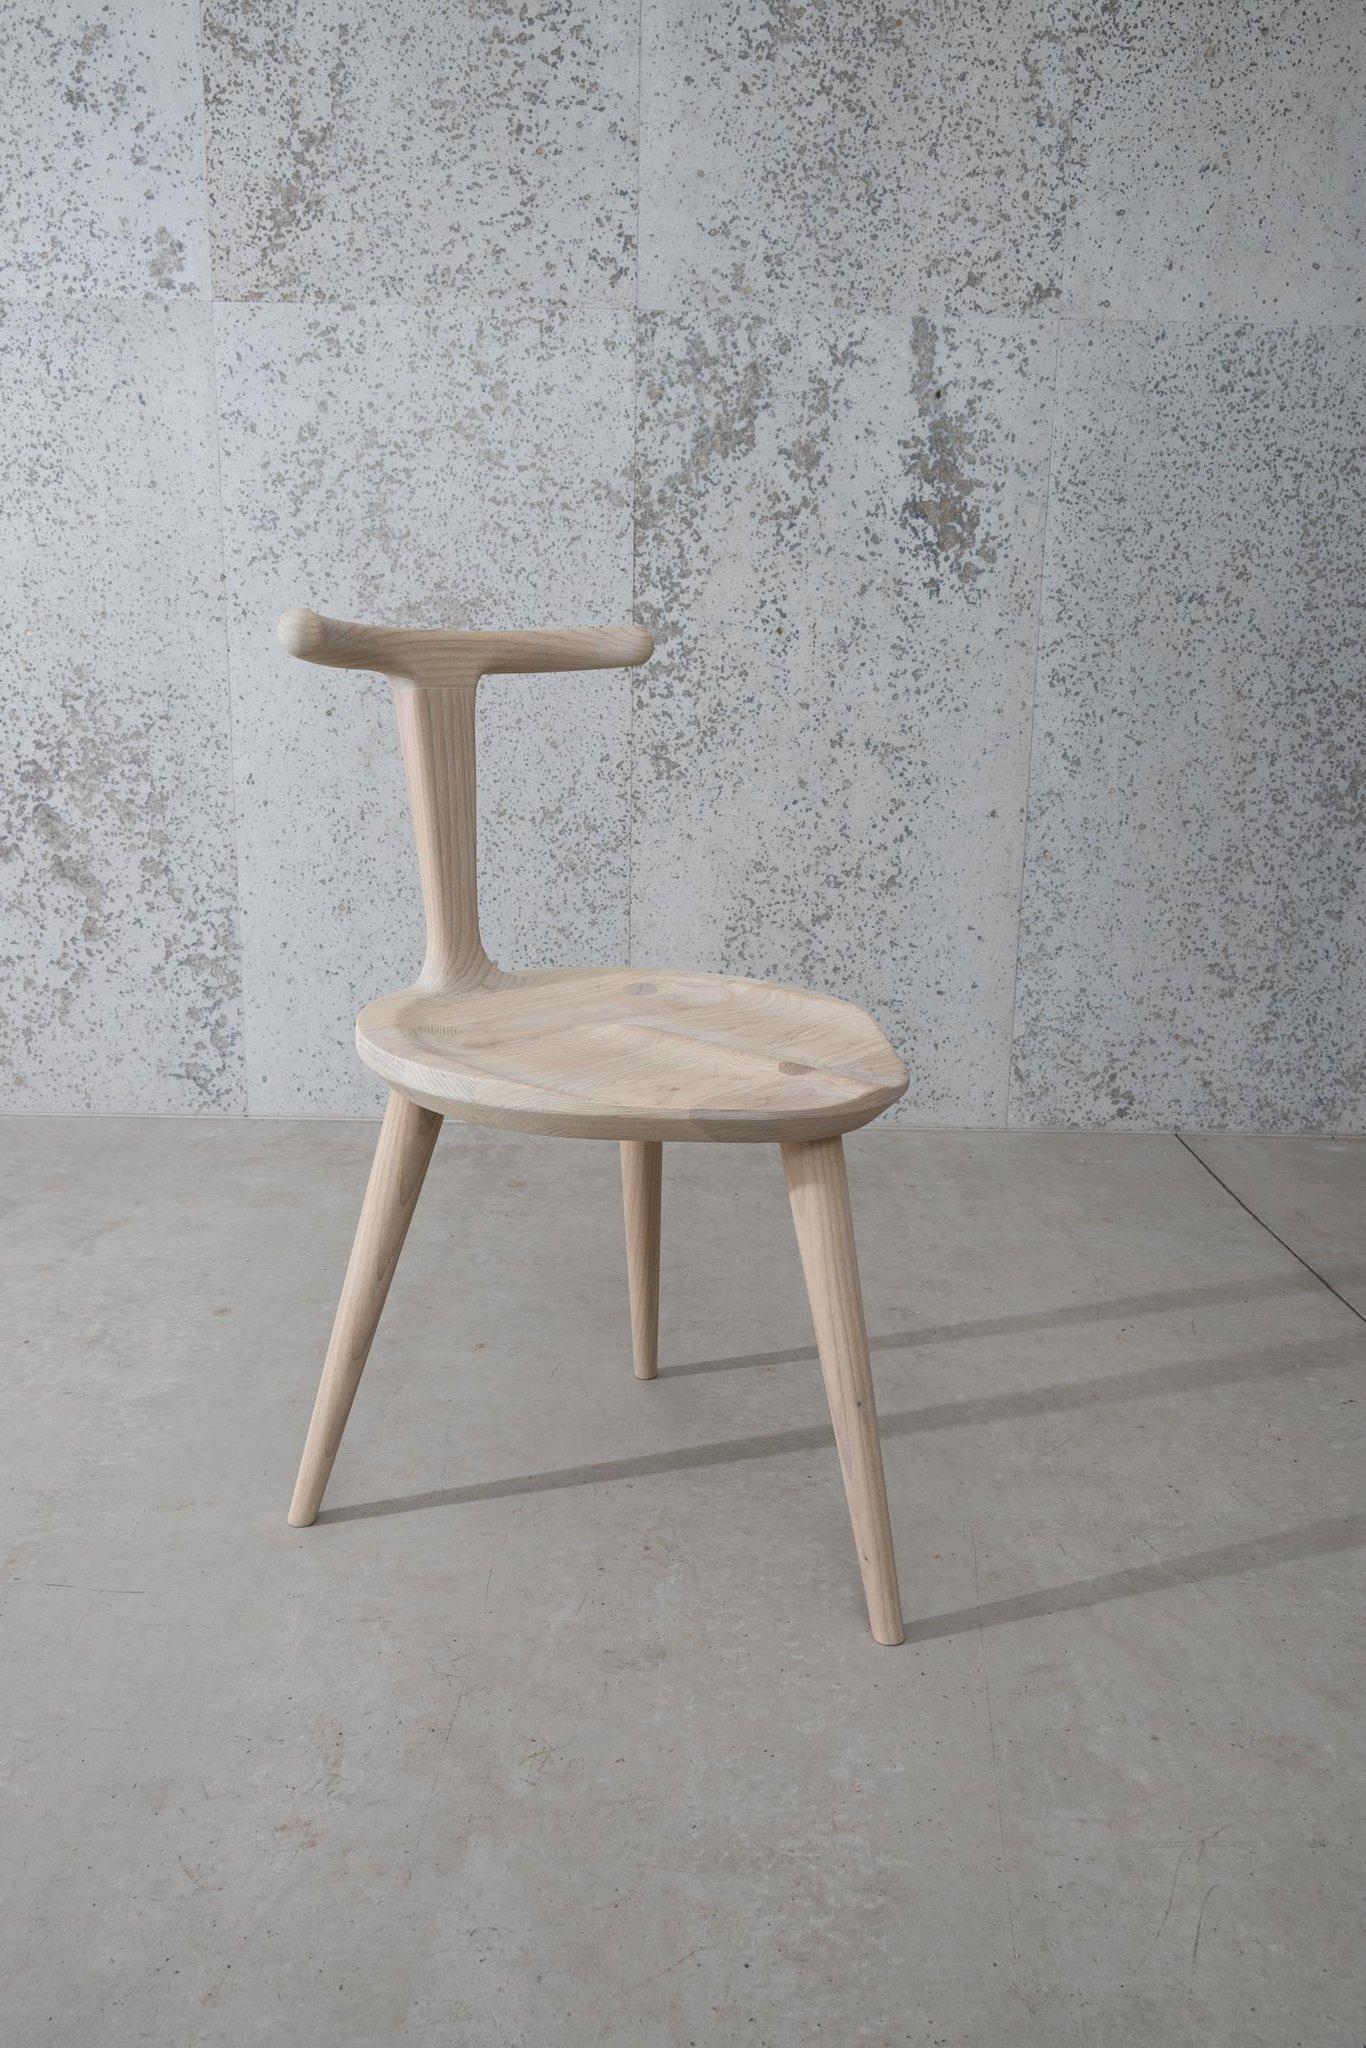 Oxbend stuhl aus weißer esche 3 beine by Fernweh Woodworking
Abmessungen: Sitz: B 17